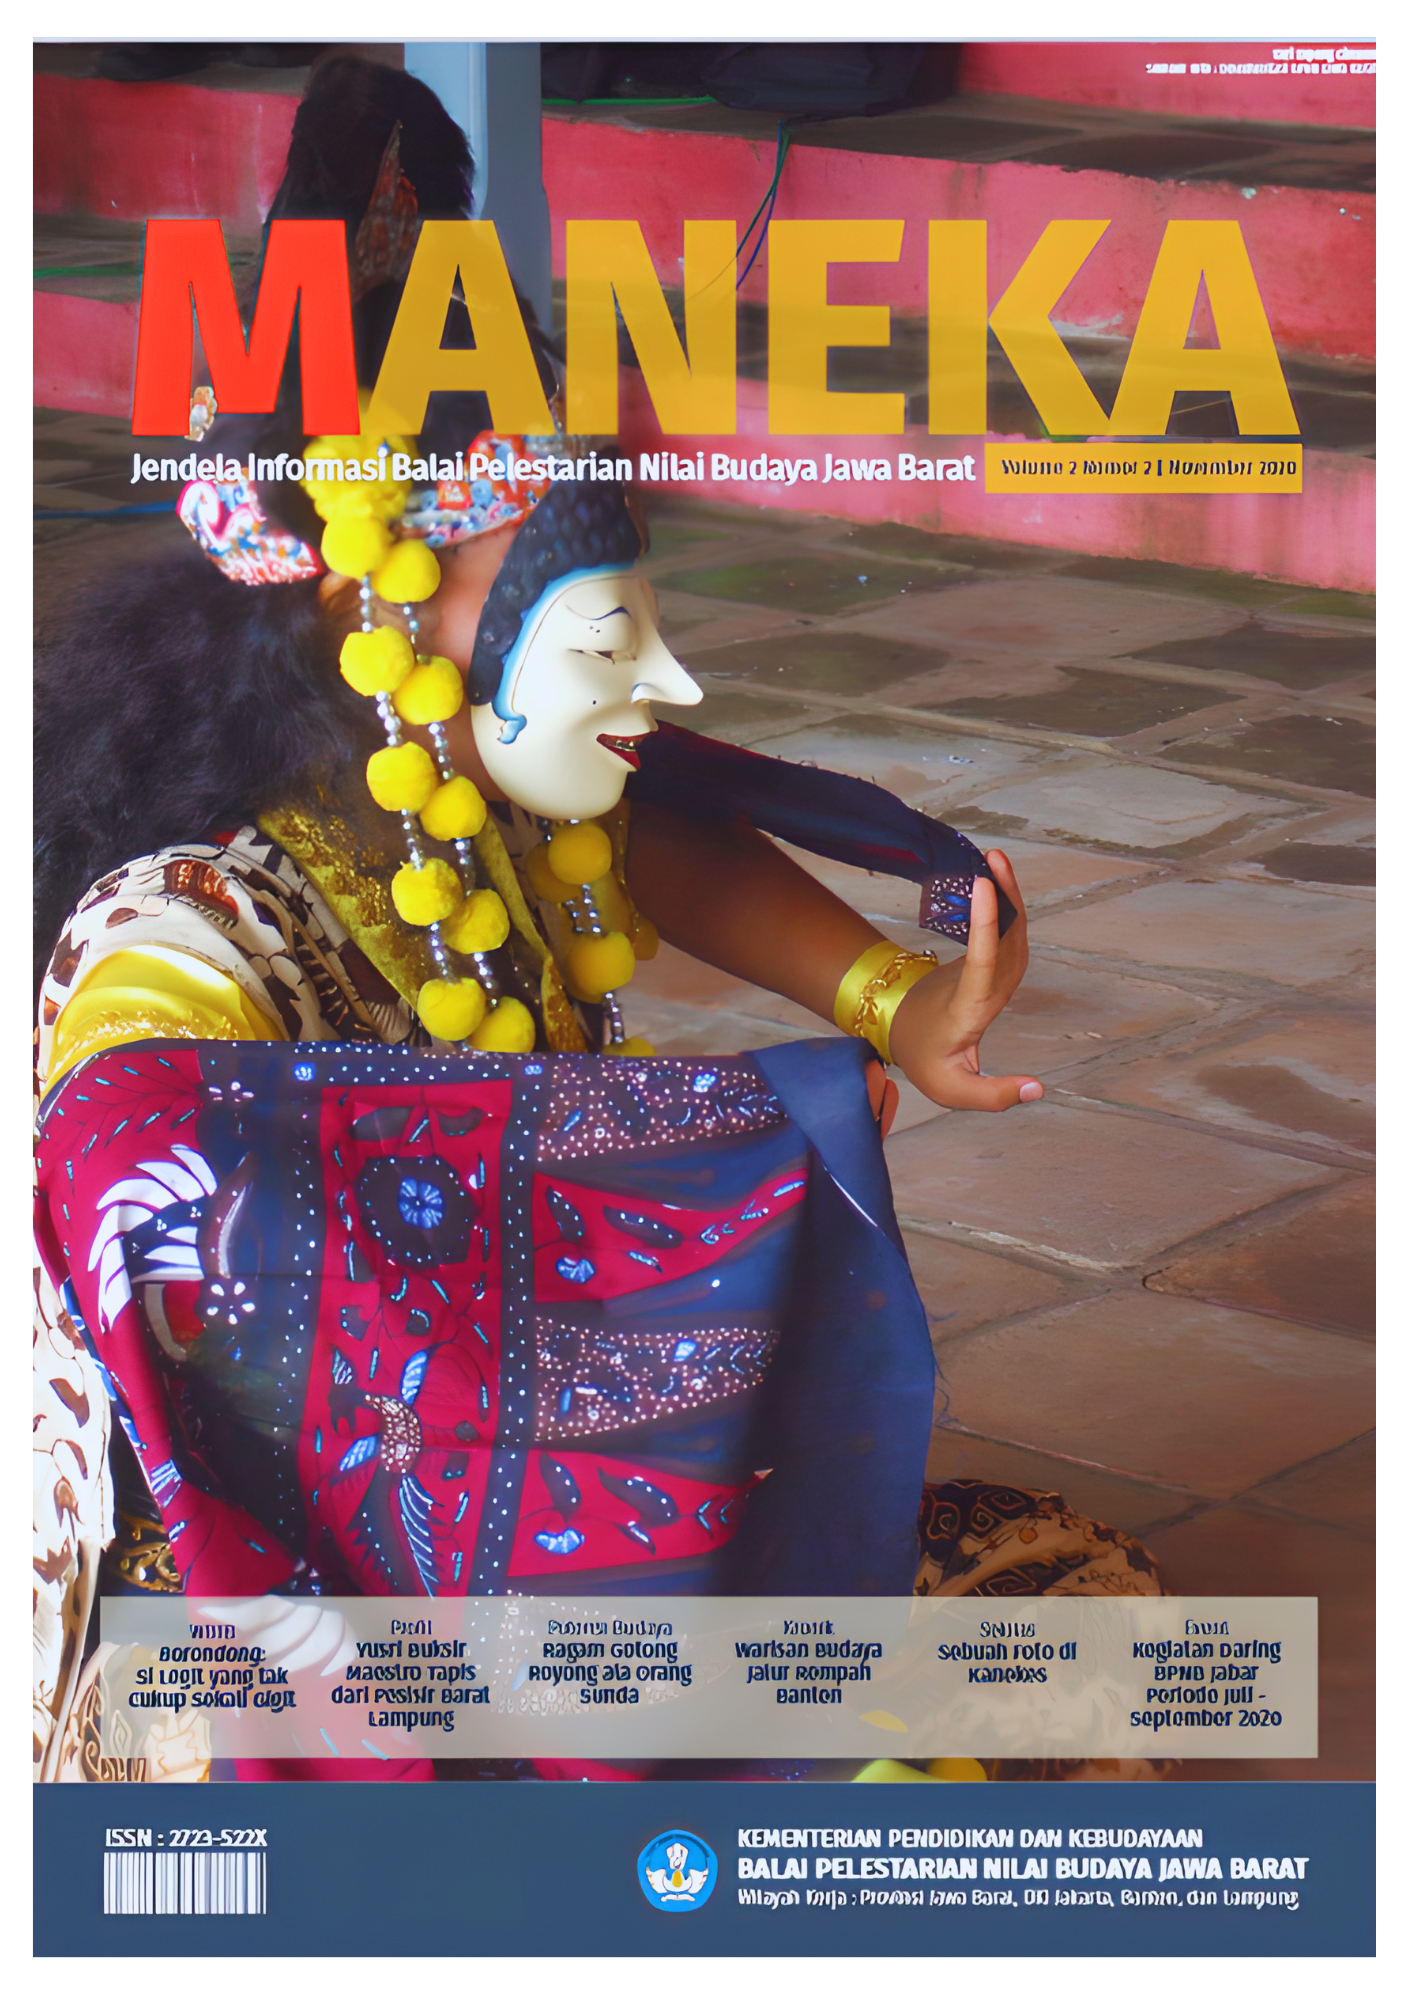 You are currently viewing MANEKA : (Volume 2 Nomor 2) November 2020 Jendela Informasi Balai Pelestarian Nilai Budaya Jawa Barat